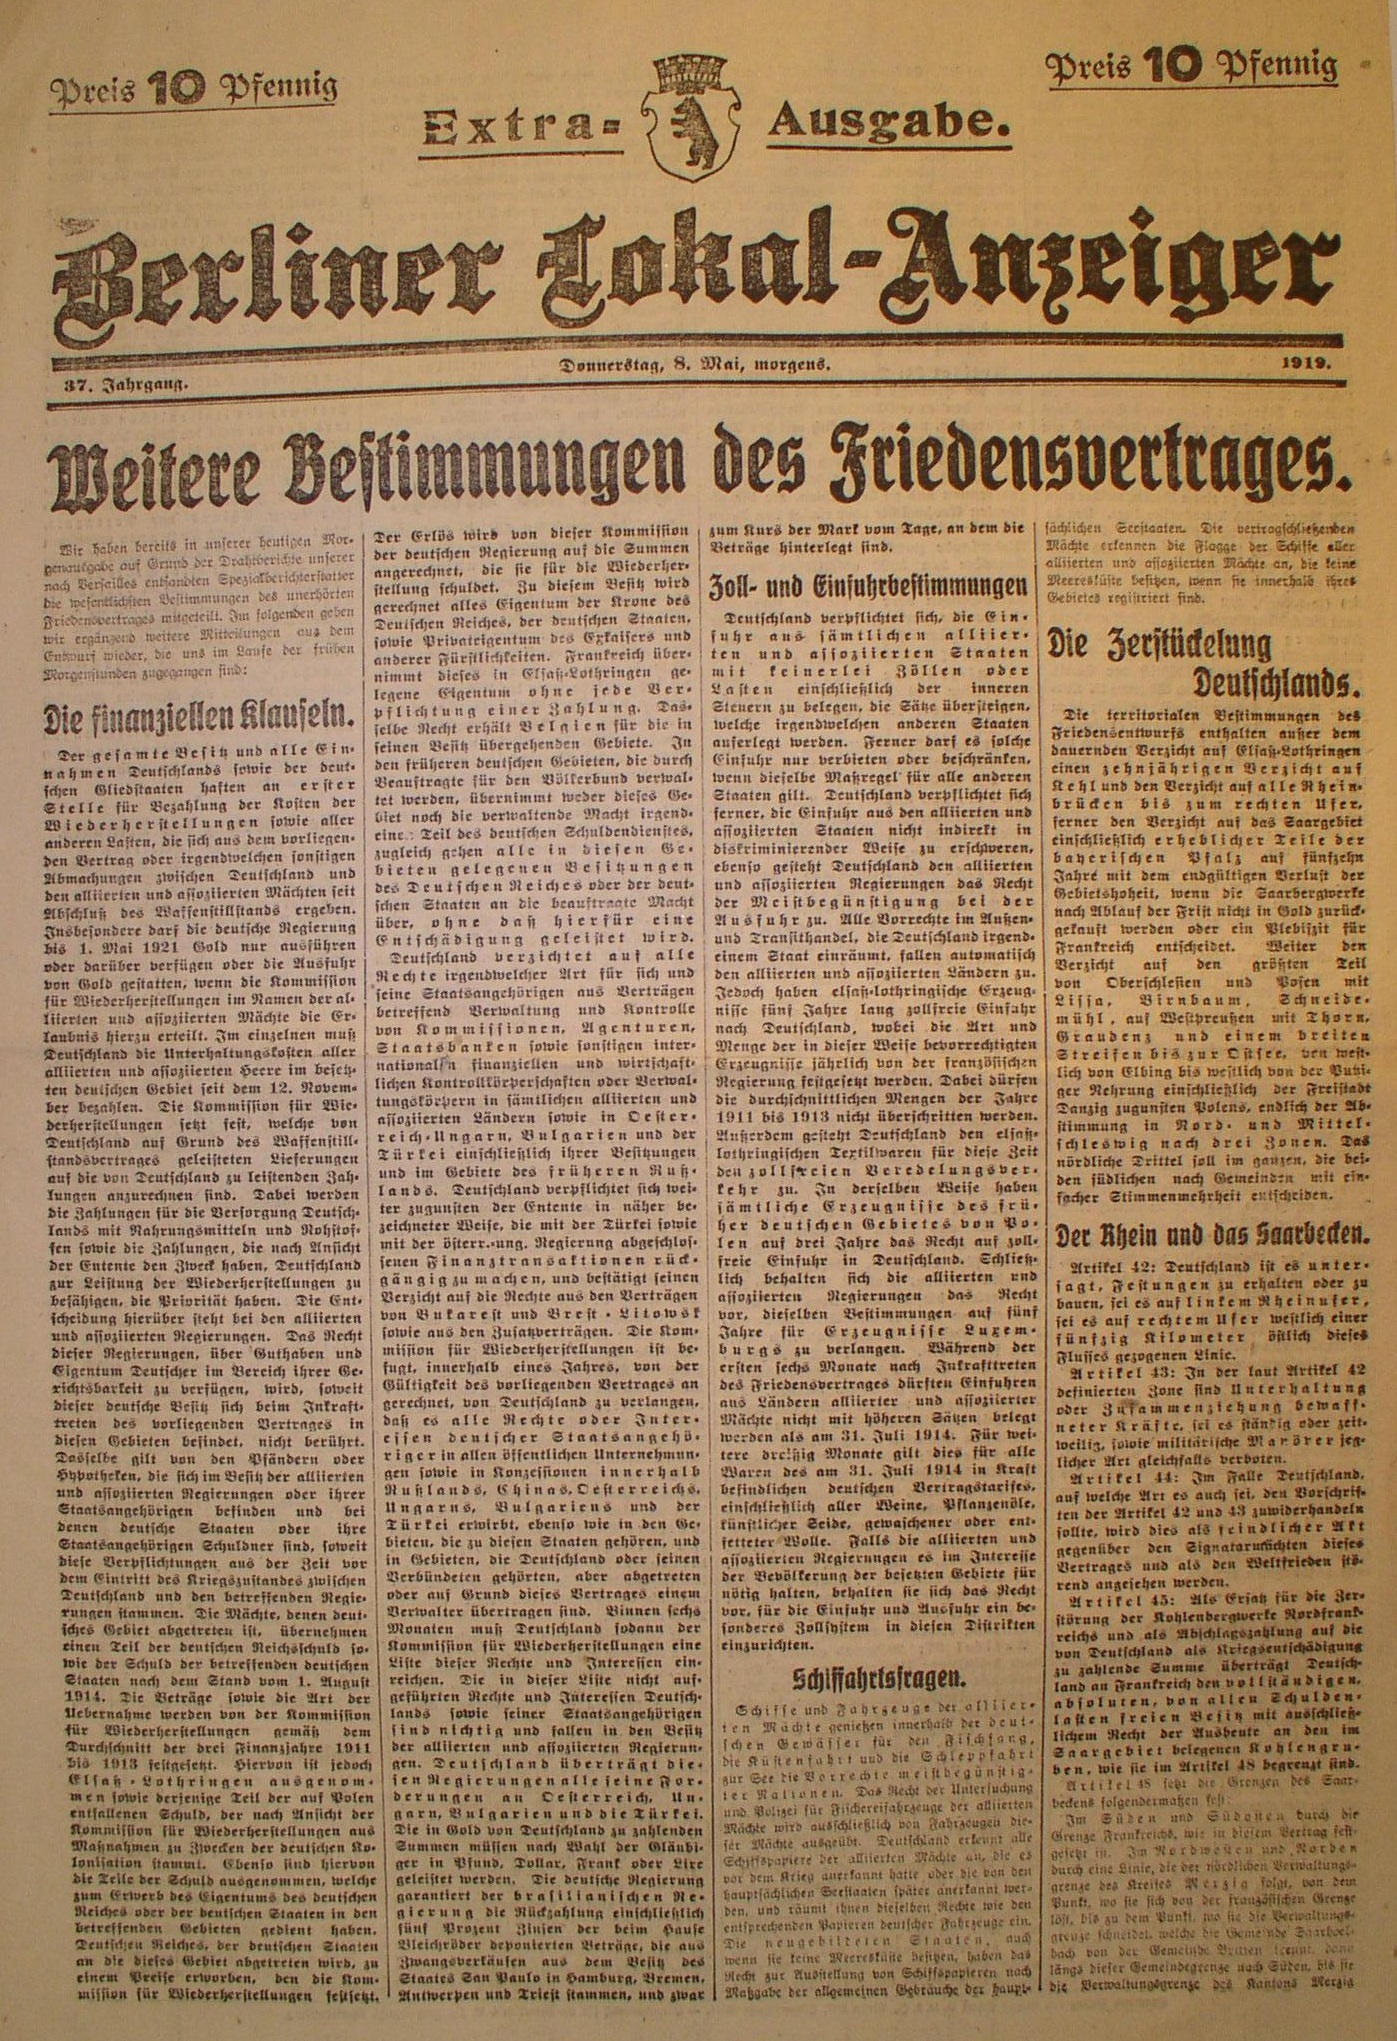 Zeitung: Berliner Lokal-Anzeiger (Titelblatt), 8.Mai 1919 (Kollektives Gedächtnis)